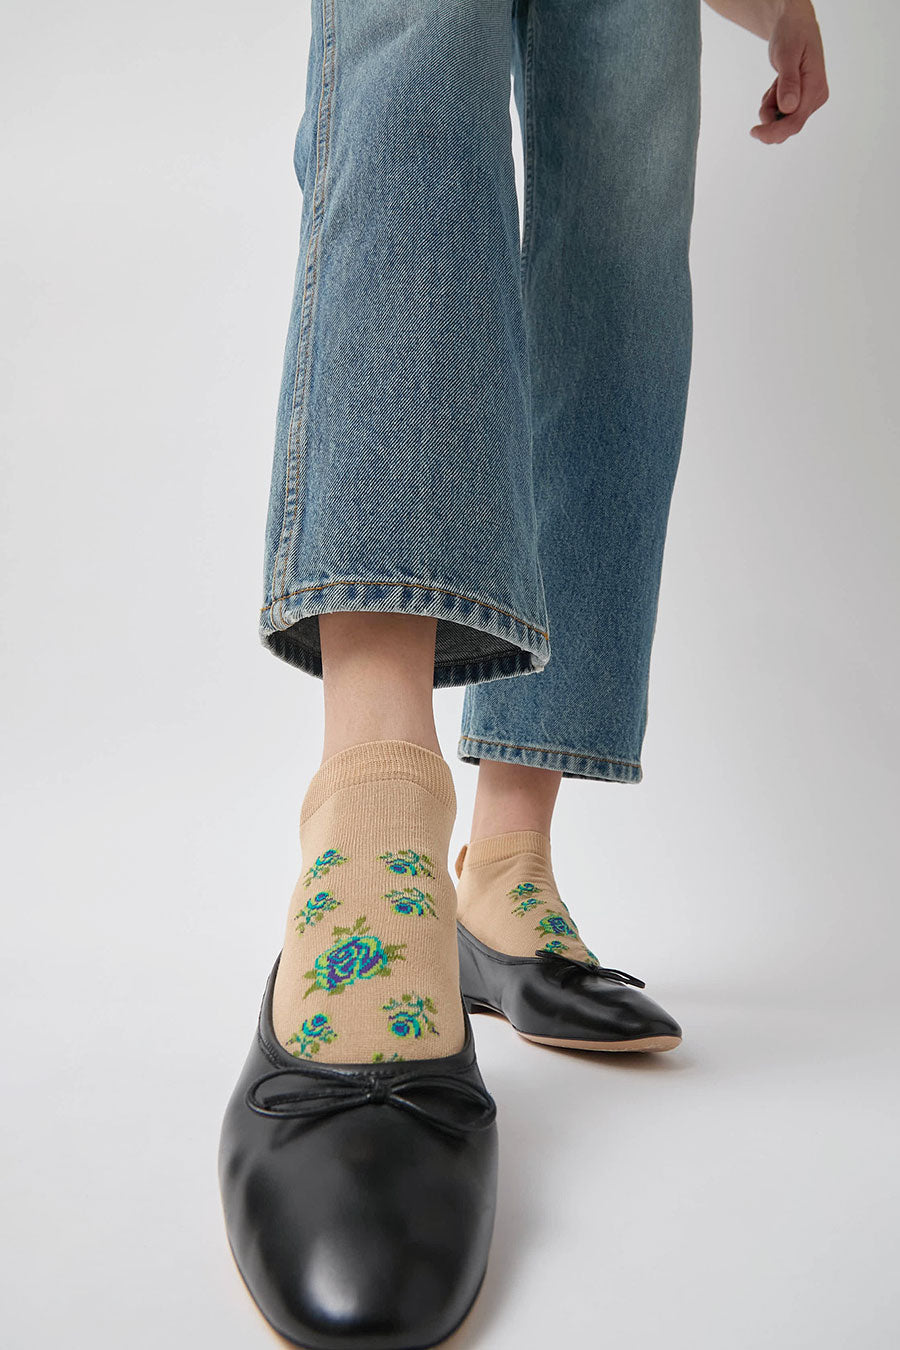 Maria La Rosa Rose Sneaker Socks in Cream and Green